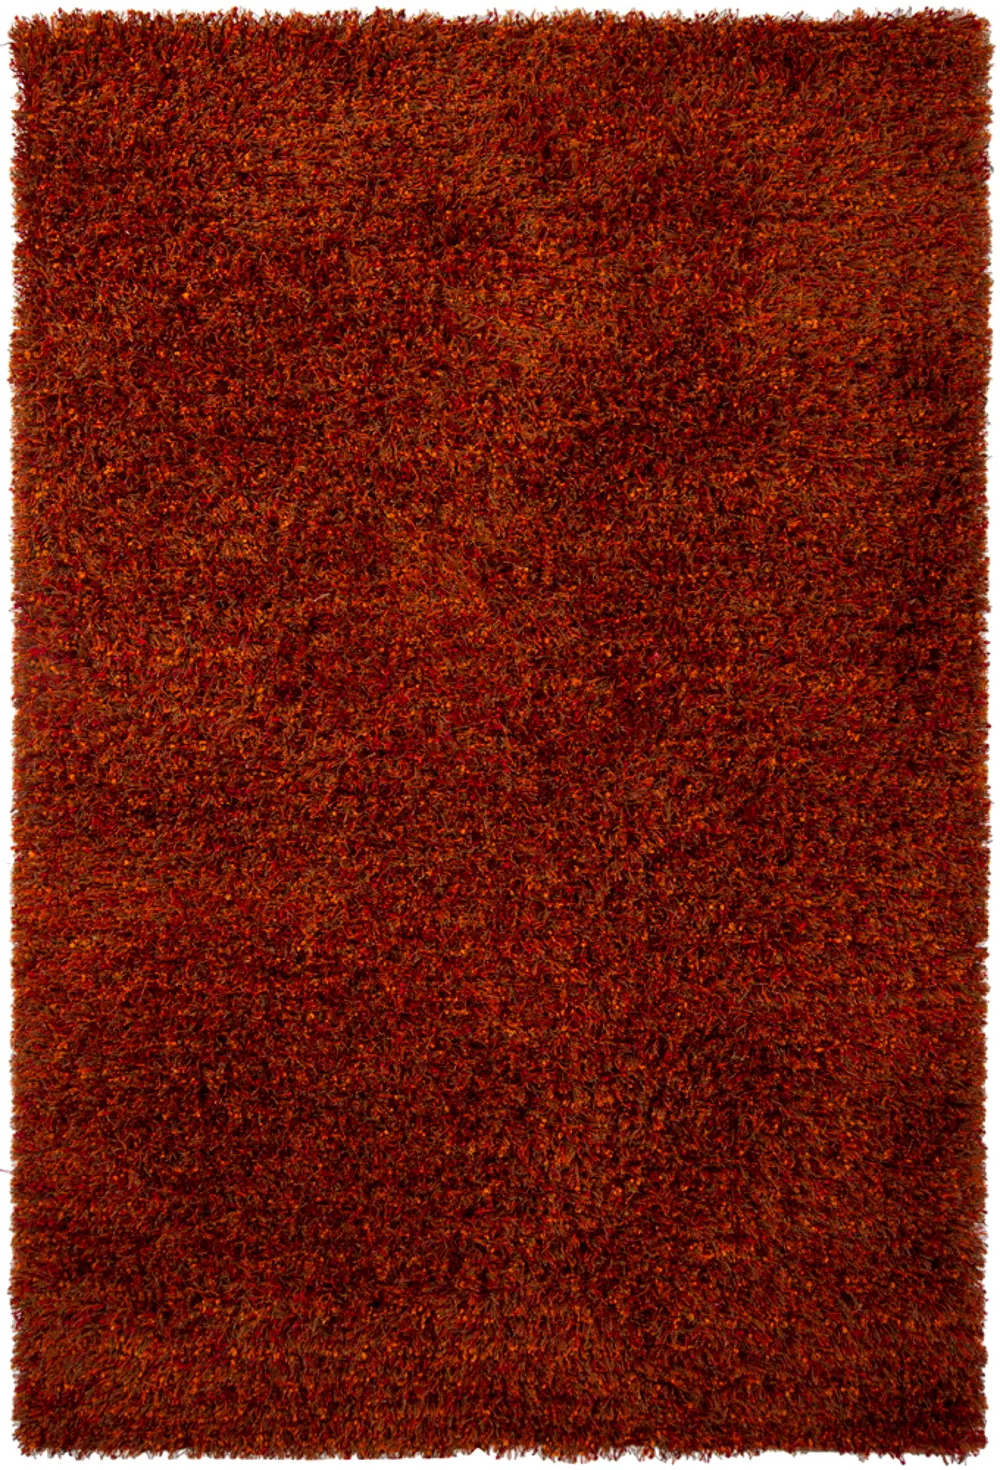 5 x 8 Medium Contemporary Red-Orange Area Rug - Mai-1